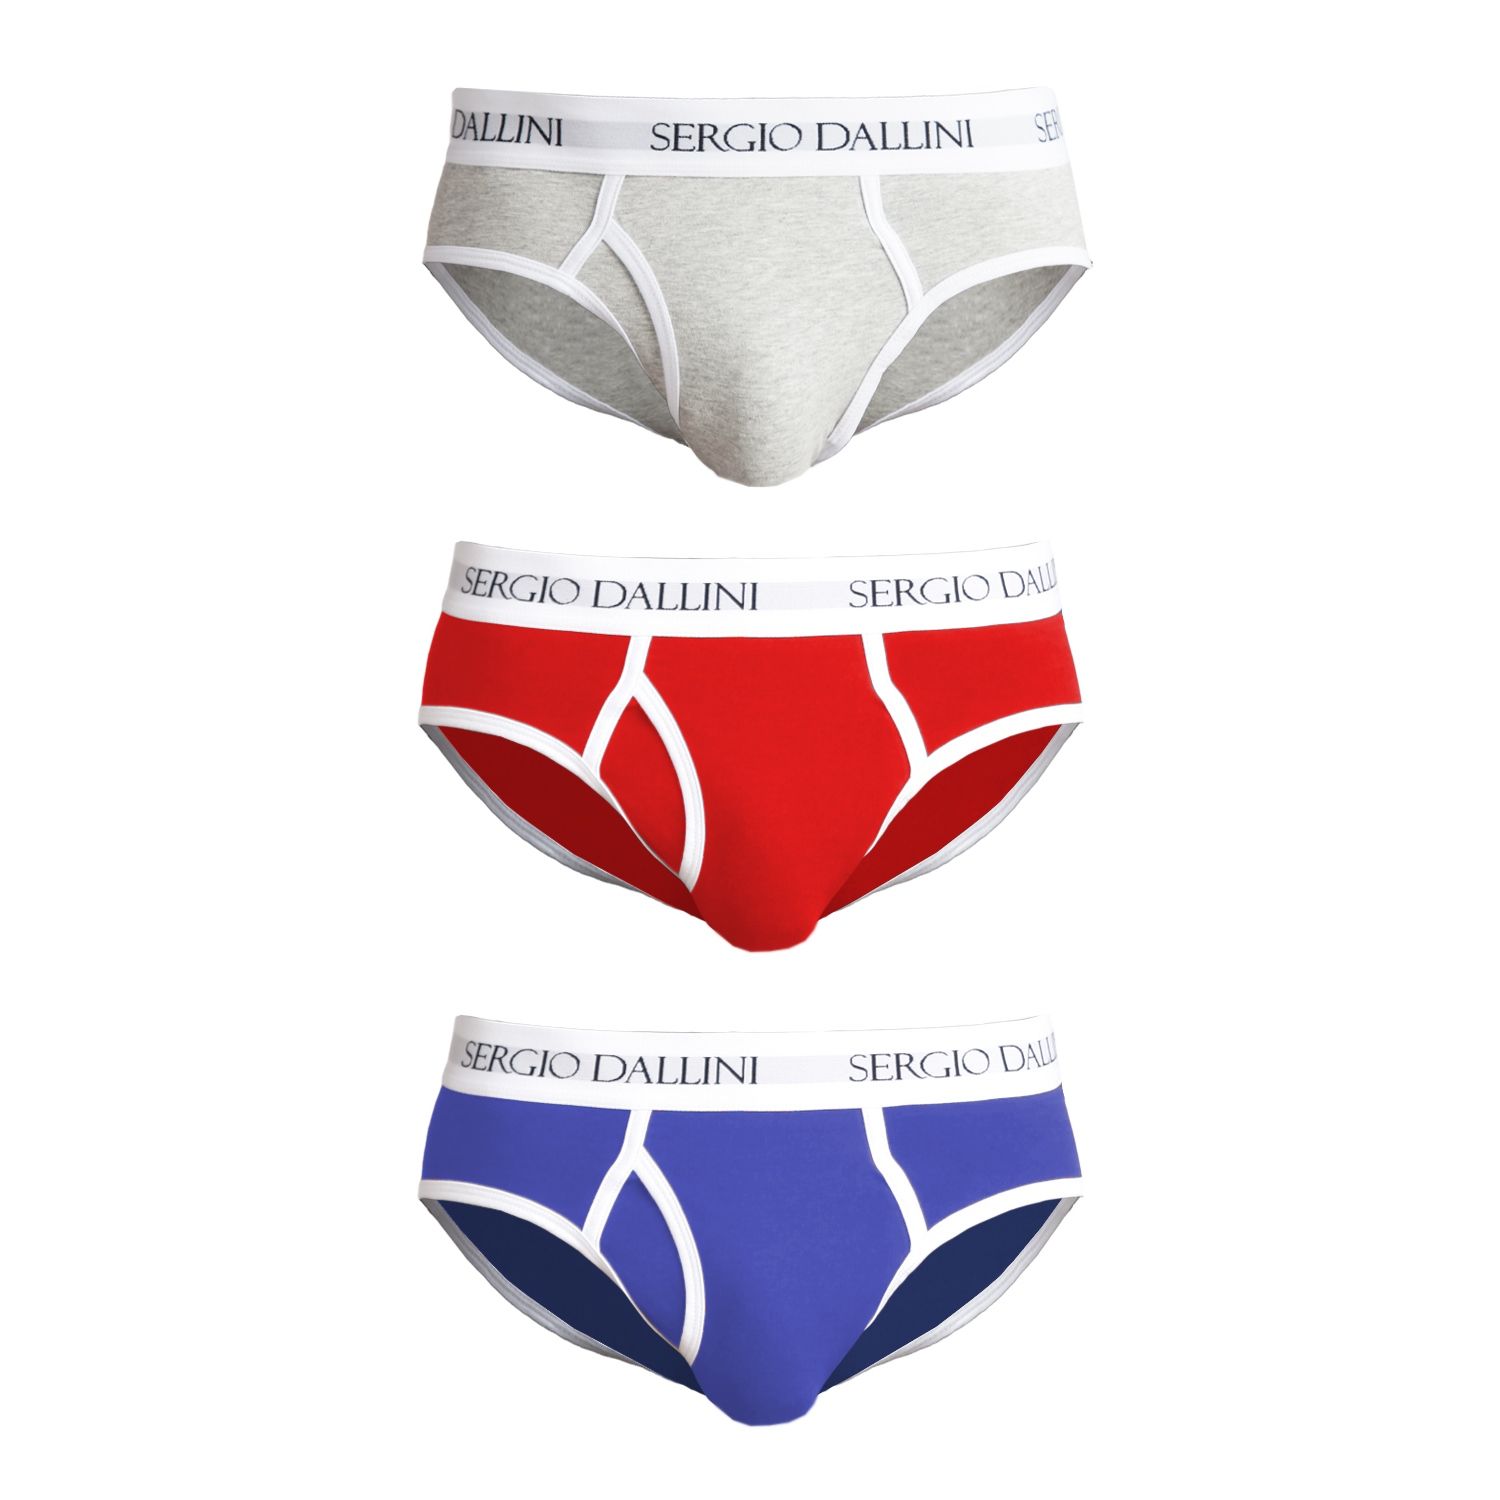 Набор из трех разноцветных трусов-брифов Sergio Dallini: светло-серых, красных и синих).